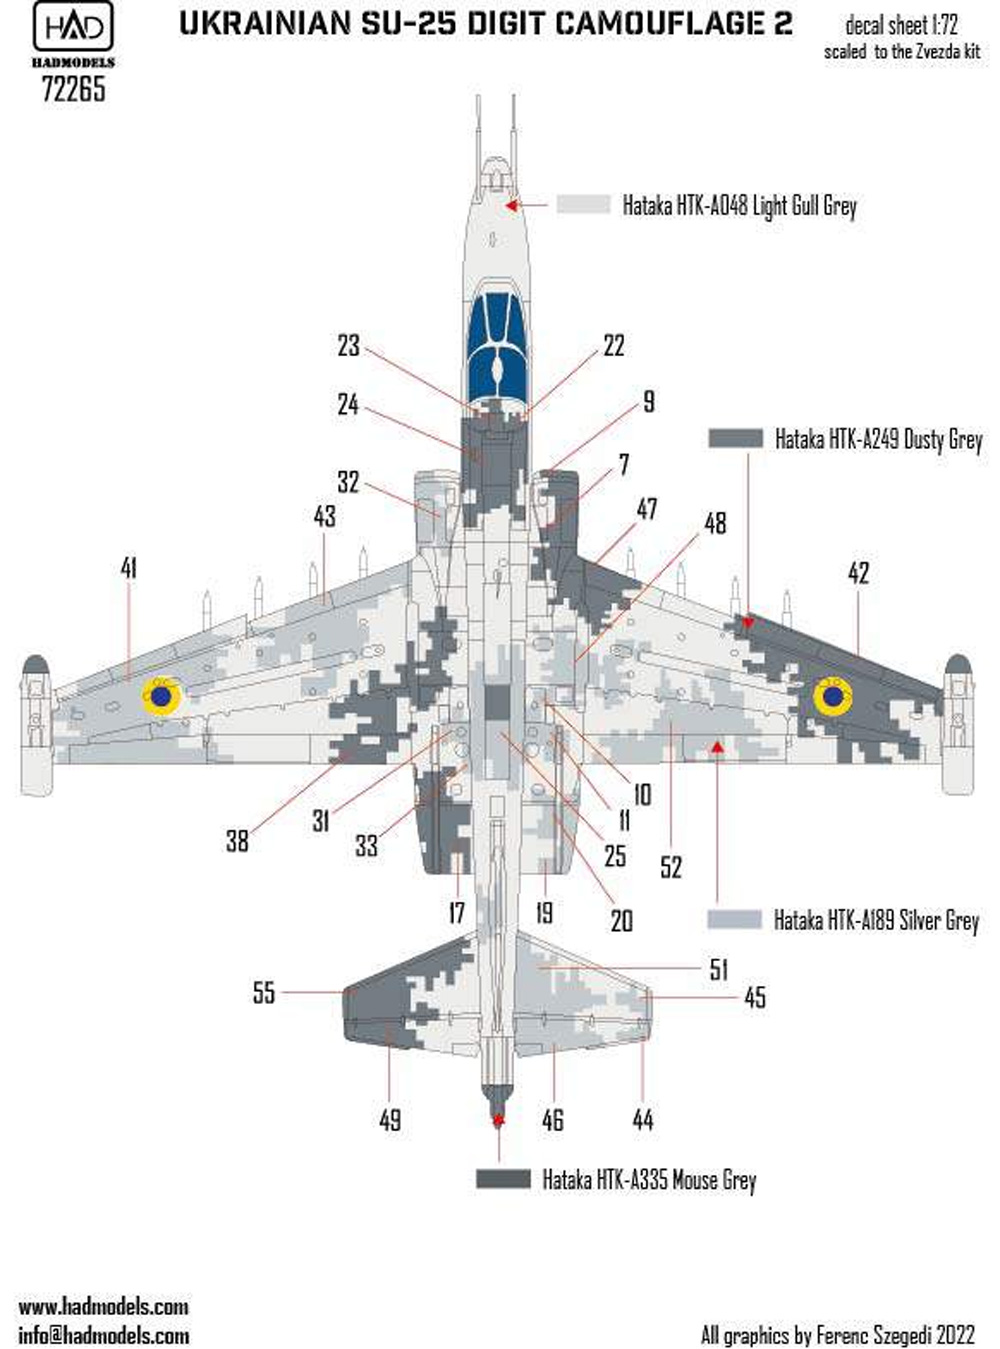 Su-25 フロッグフット ウクライナ デジタル迷彩 2 デカール (ズべズダ用) デカール (HAD MODELS 1/72 デカール No.72265) 商品画像_2